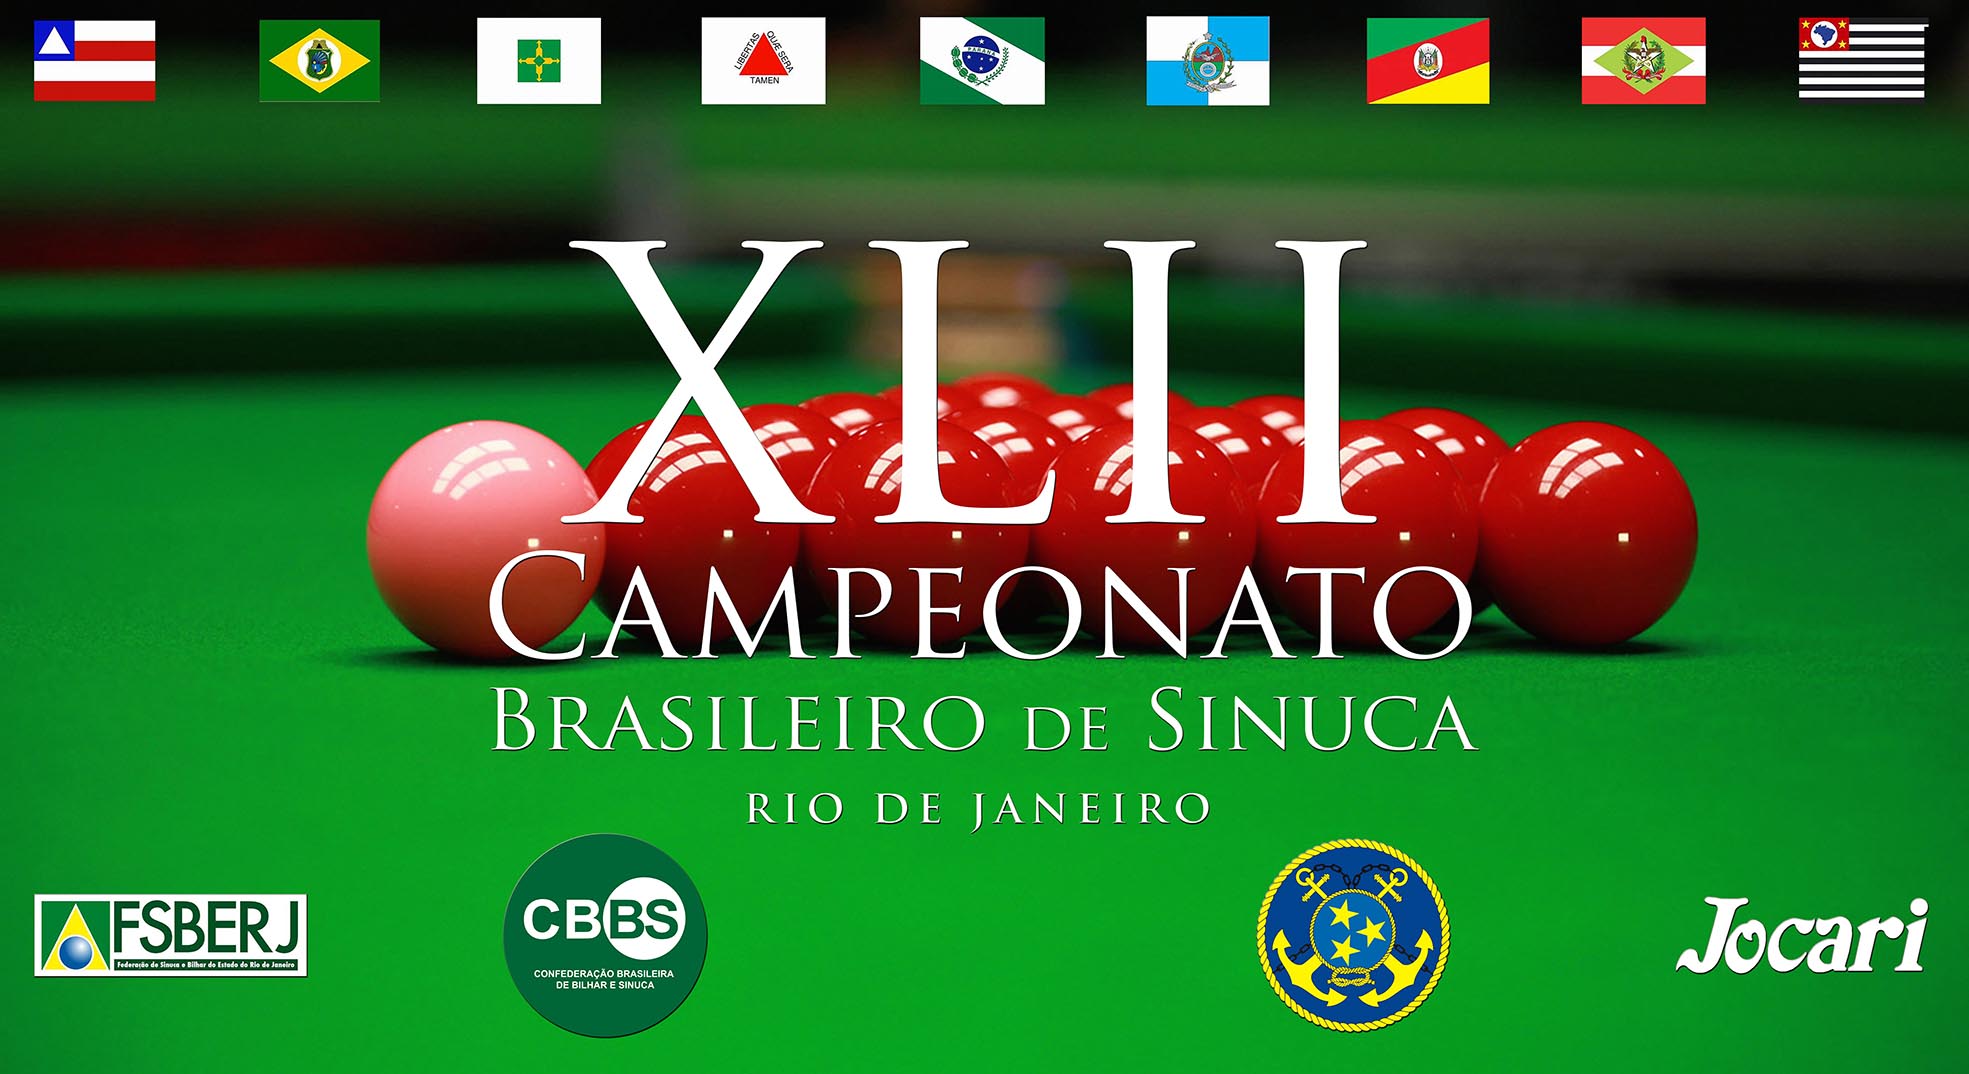 XLII CAMPEONATO BRASILEIRO DE SINUCA